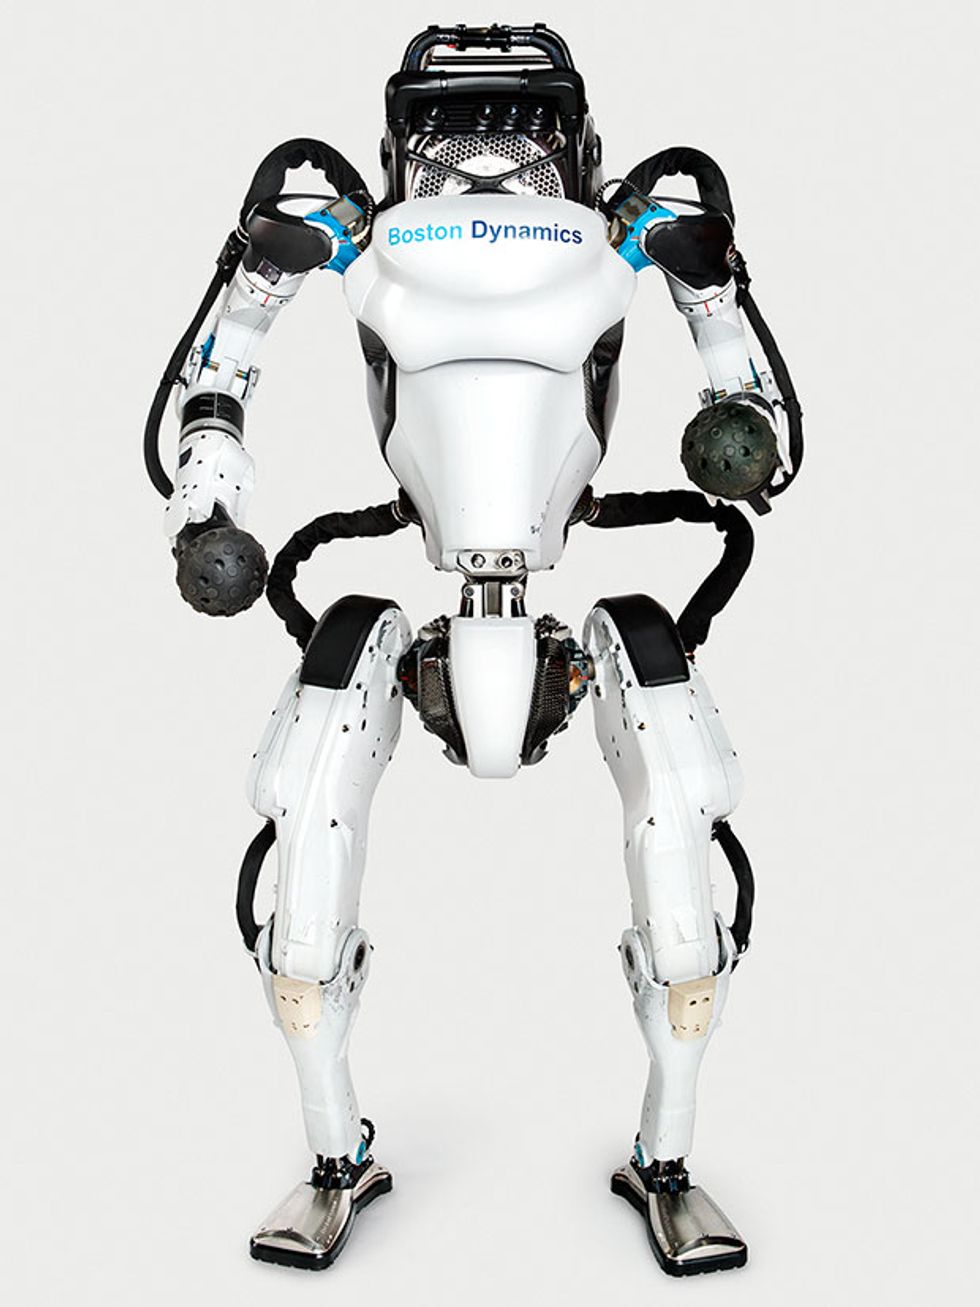 Boston Dynamics' Atlas robot standing